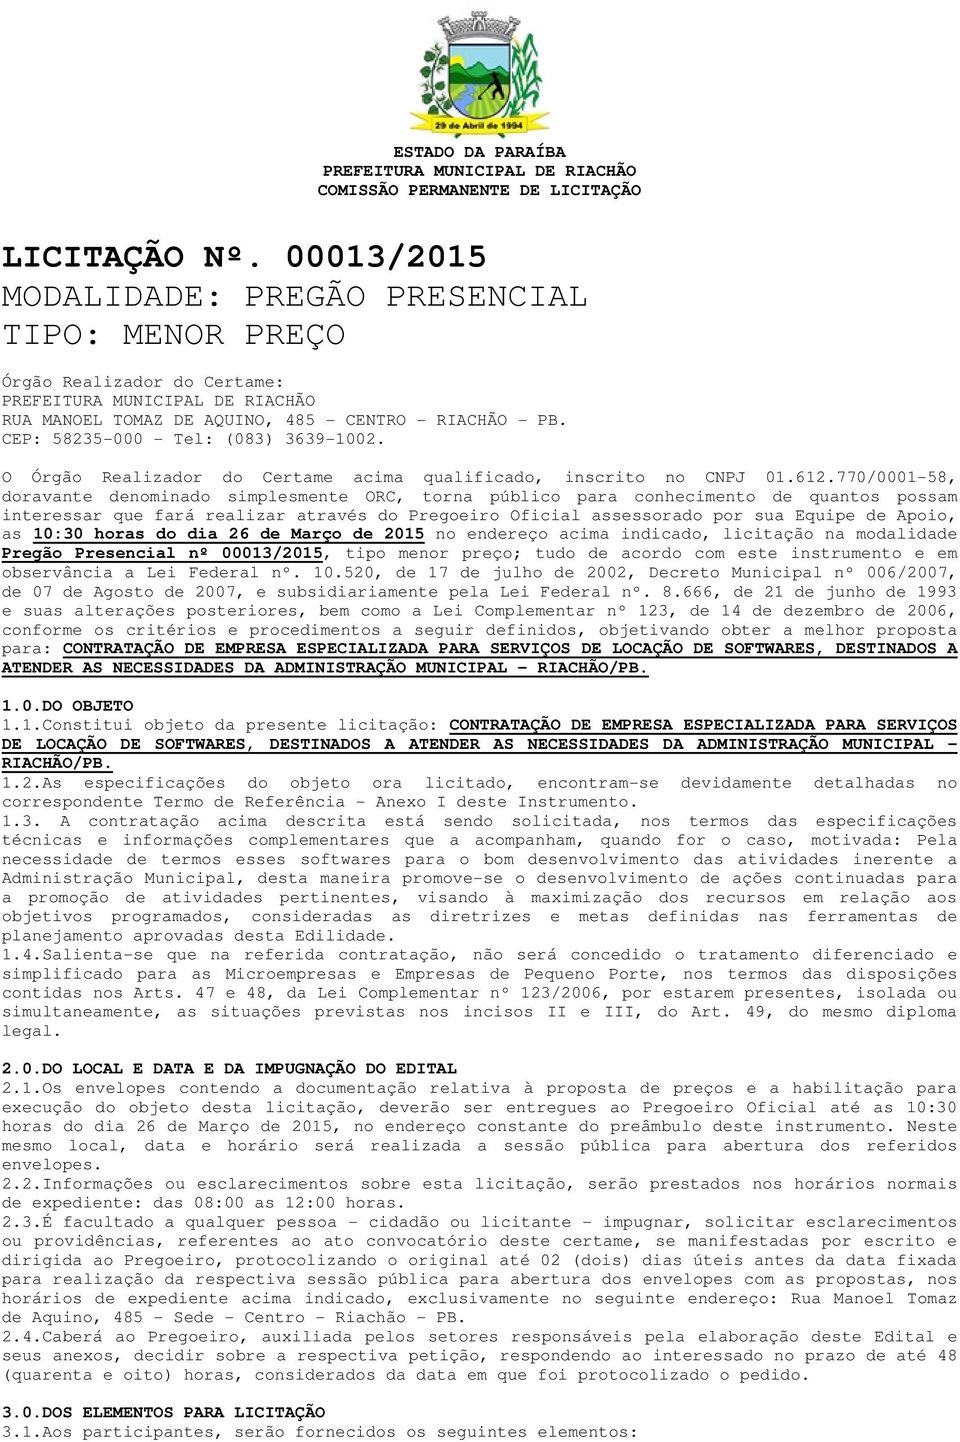 O Órgão Realizador do Certame acima qualificado, inscrito no CNPJ 01.612.